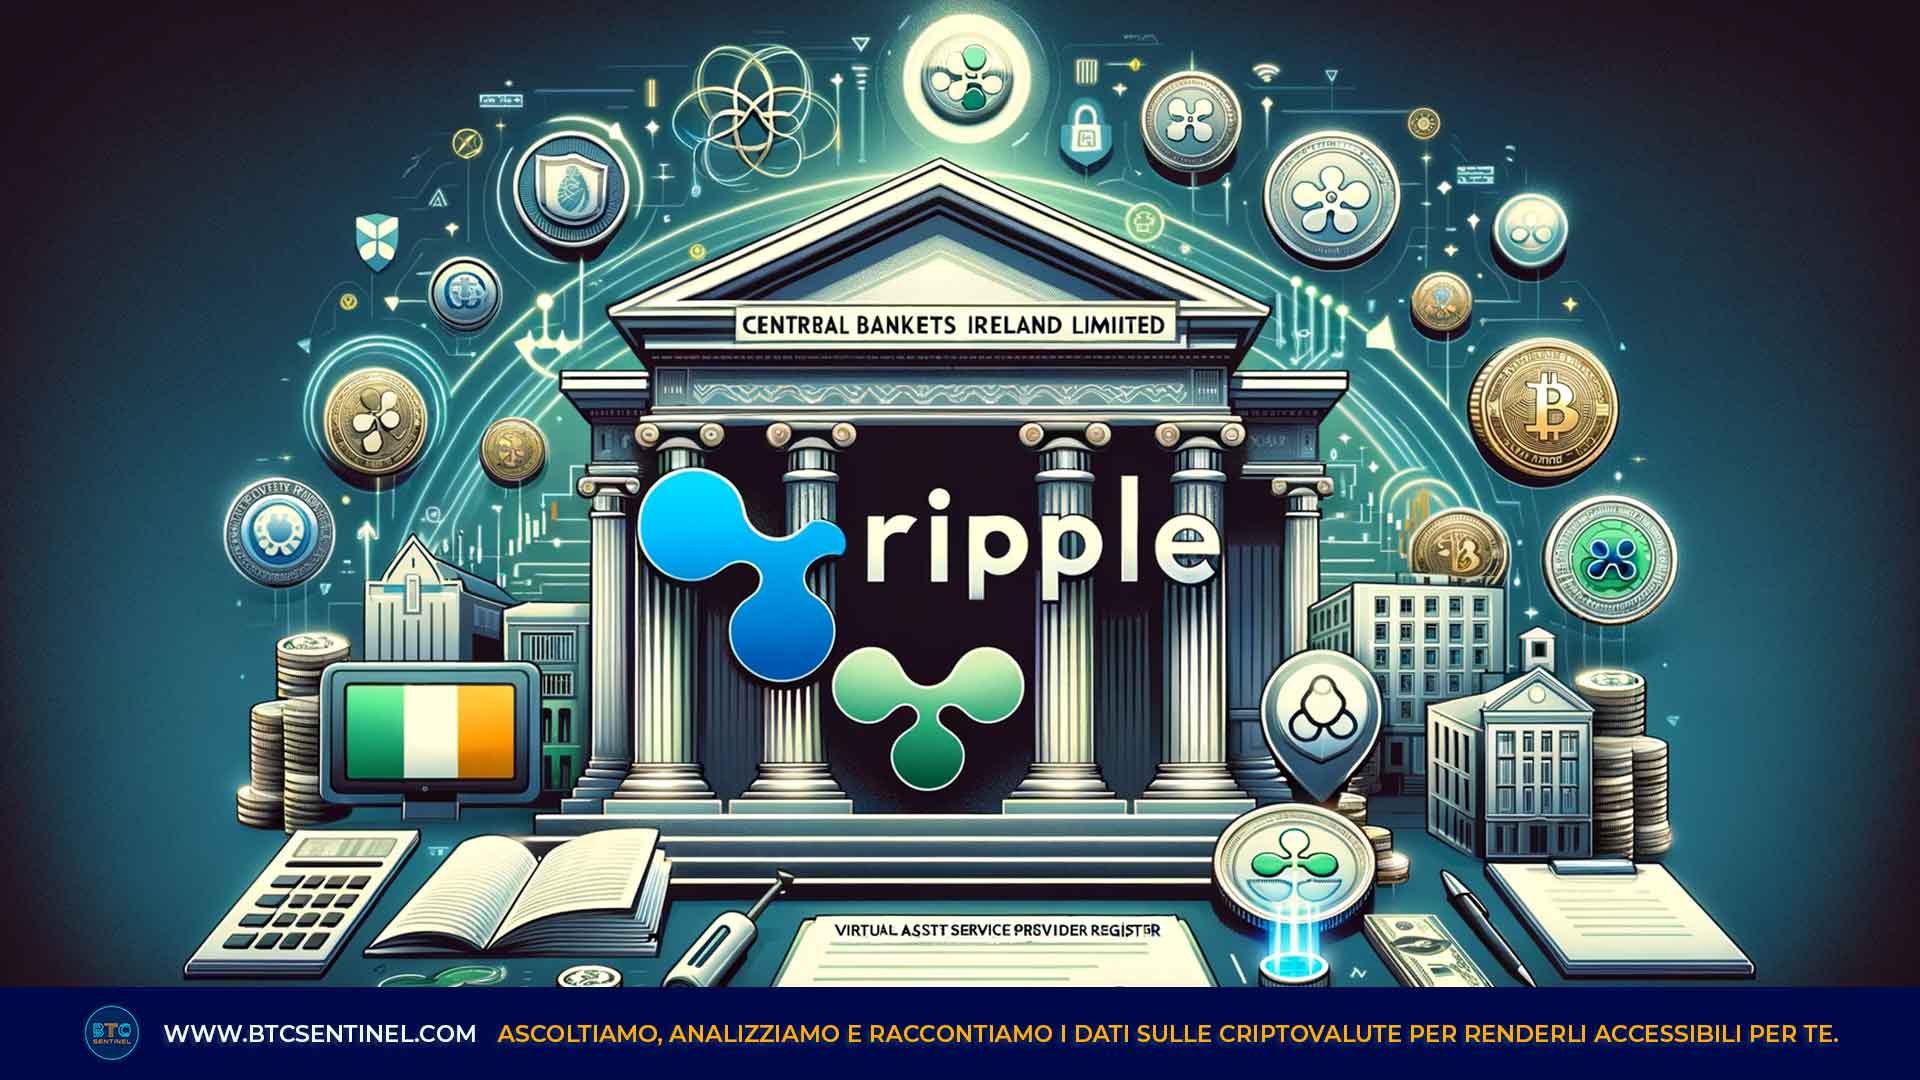 Ripple è ufficialmente fornitore registrato di servizi virtual asset della Banca Centrale d'Irlanda